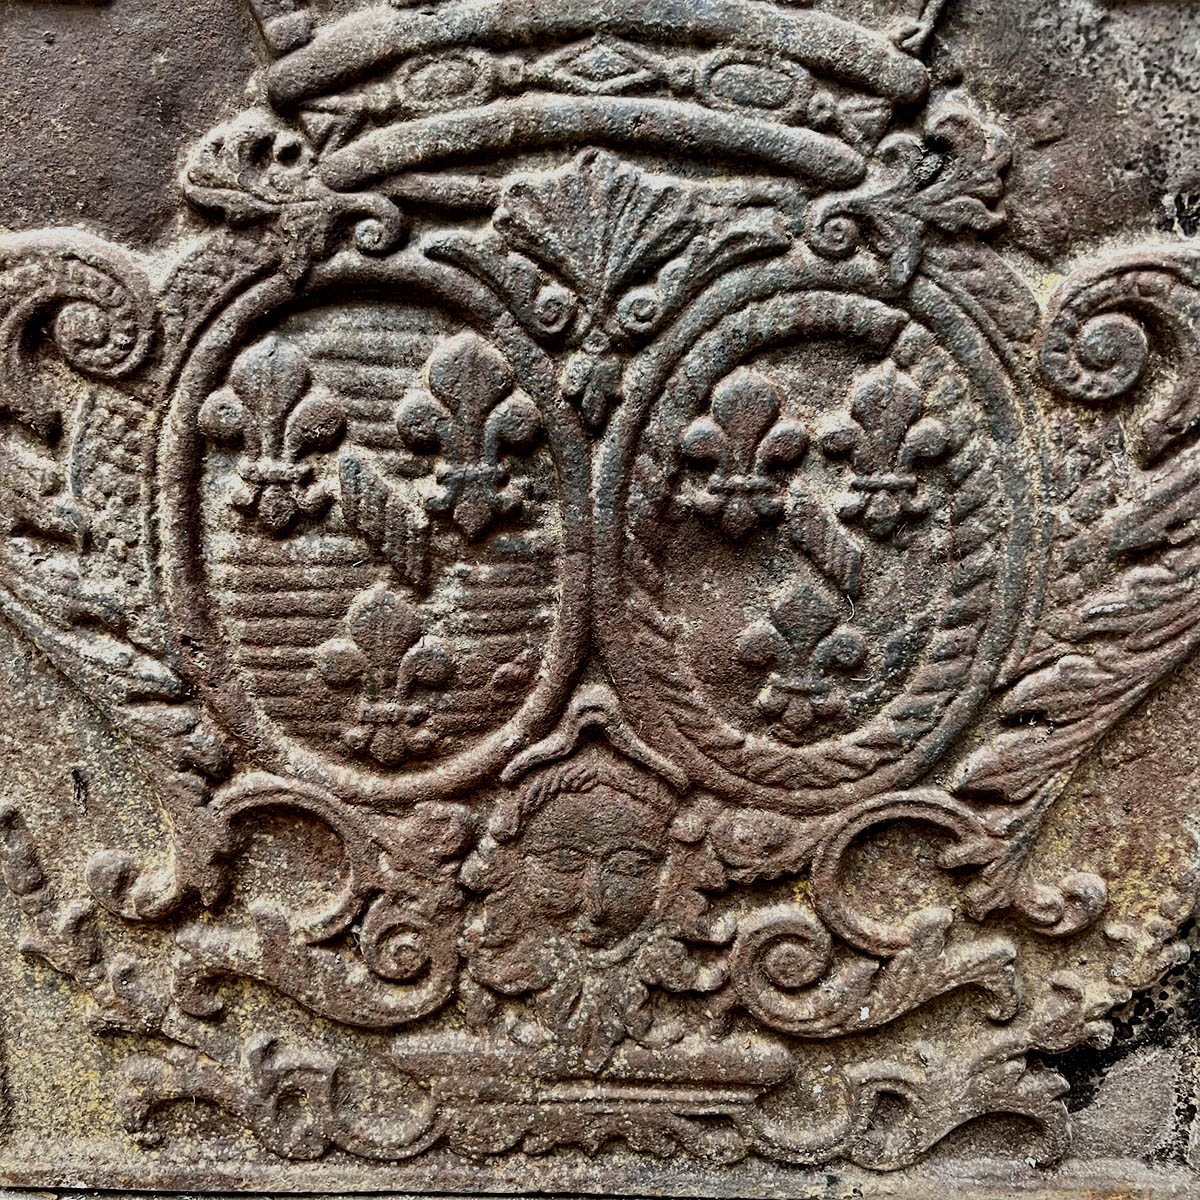 Plaque en fonte Fronton avec emblème pour cheminée Panneau de